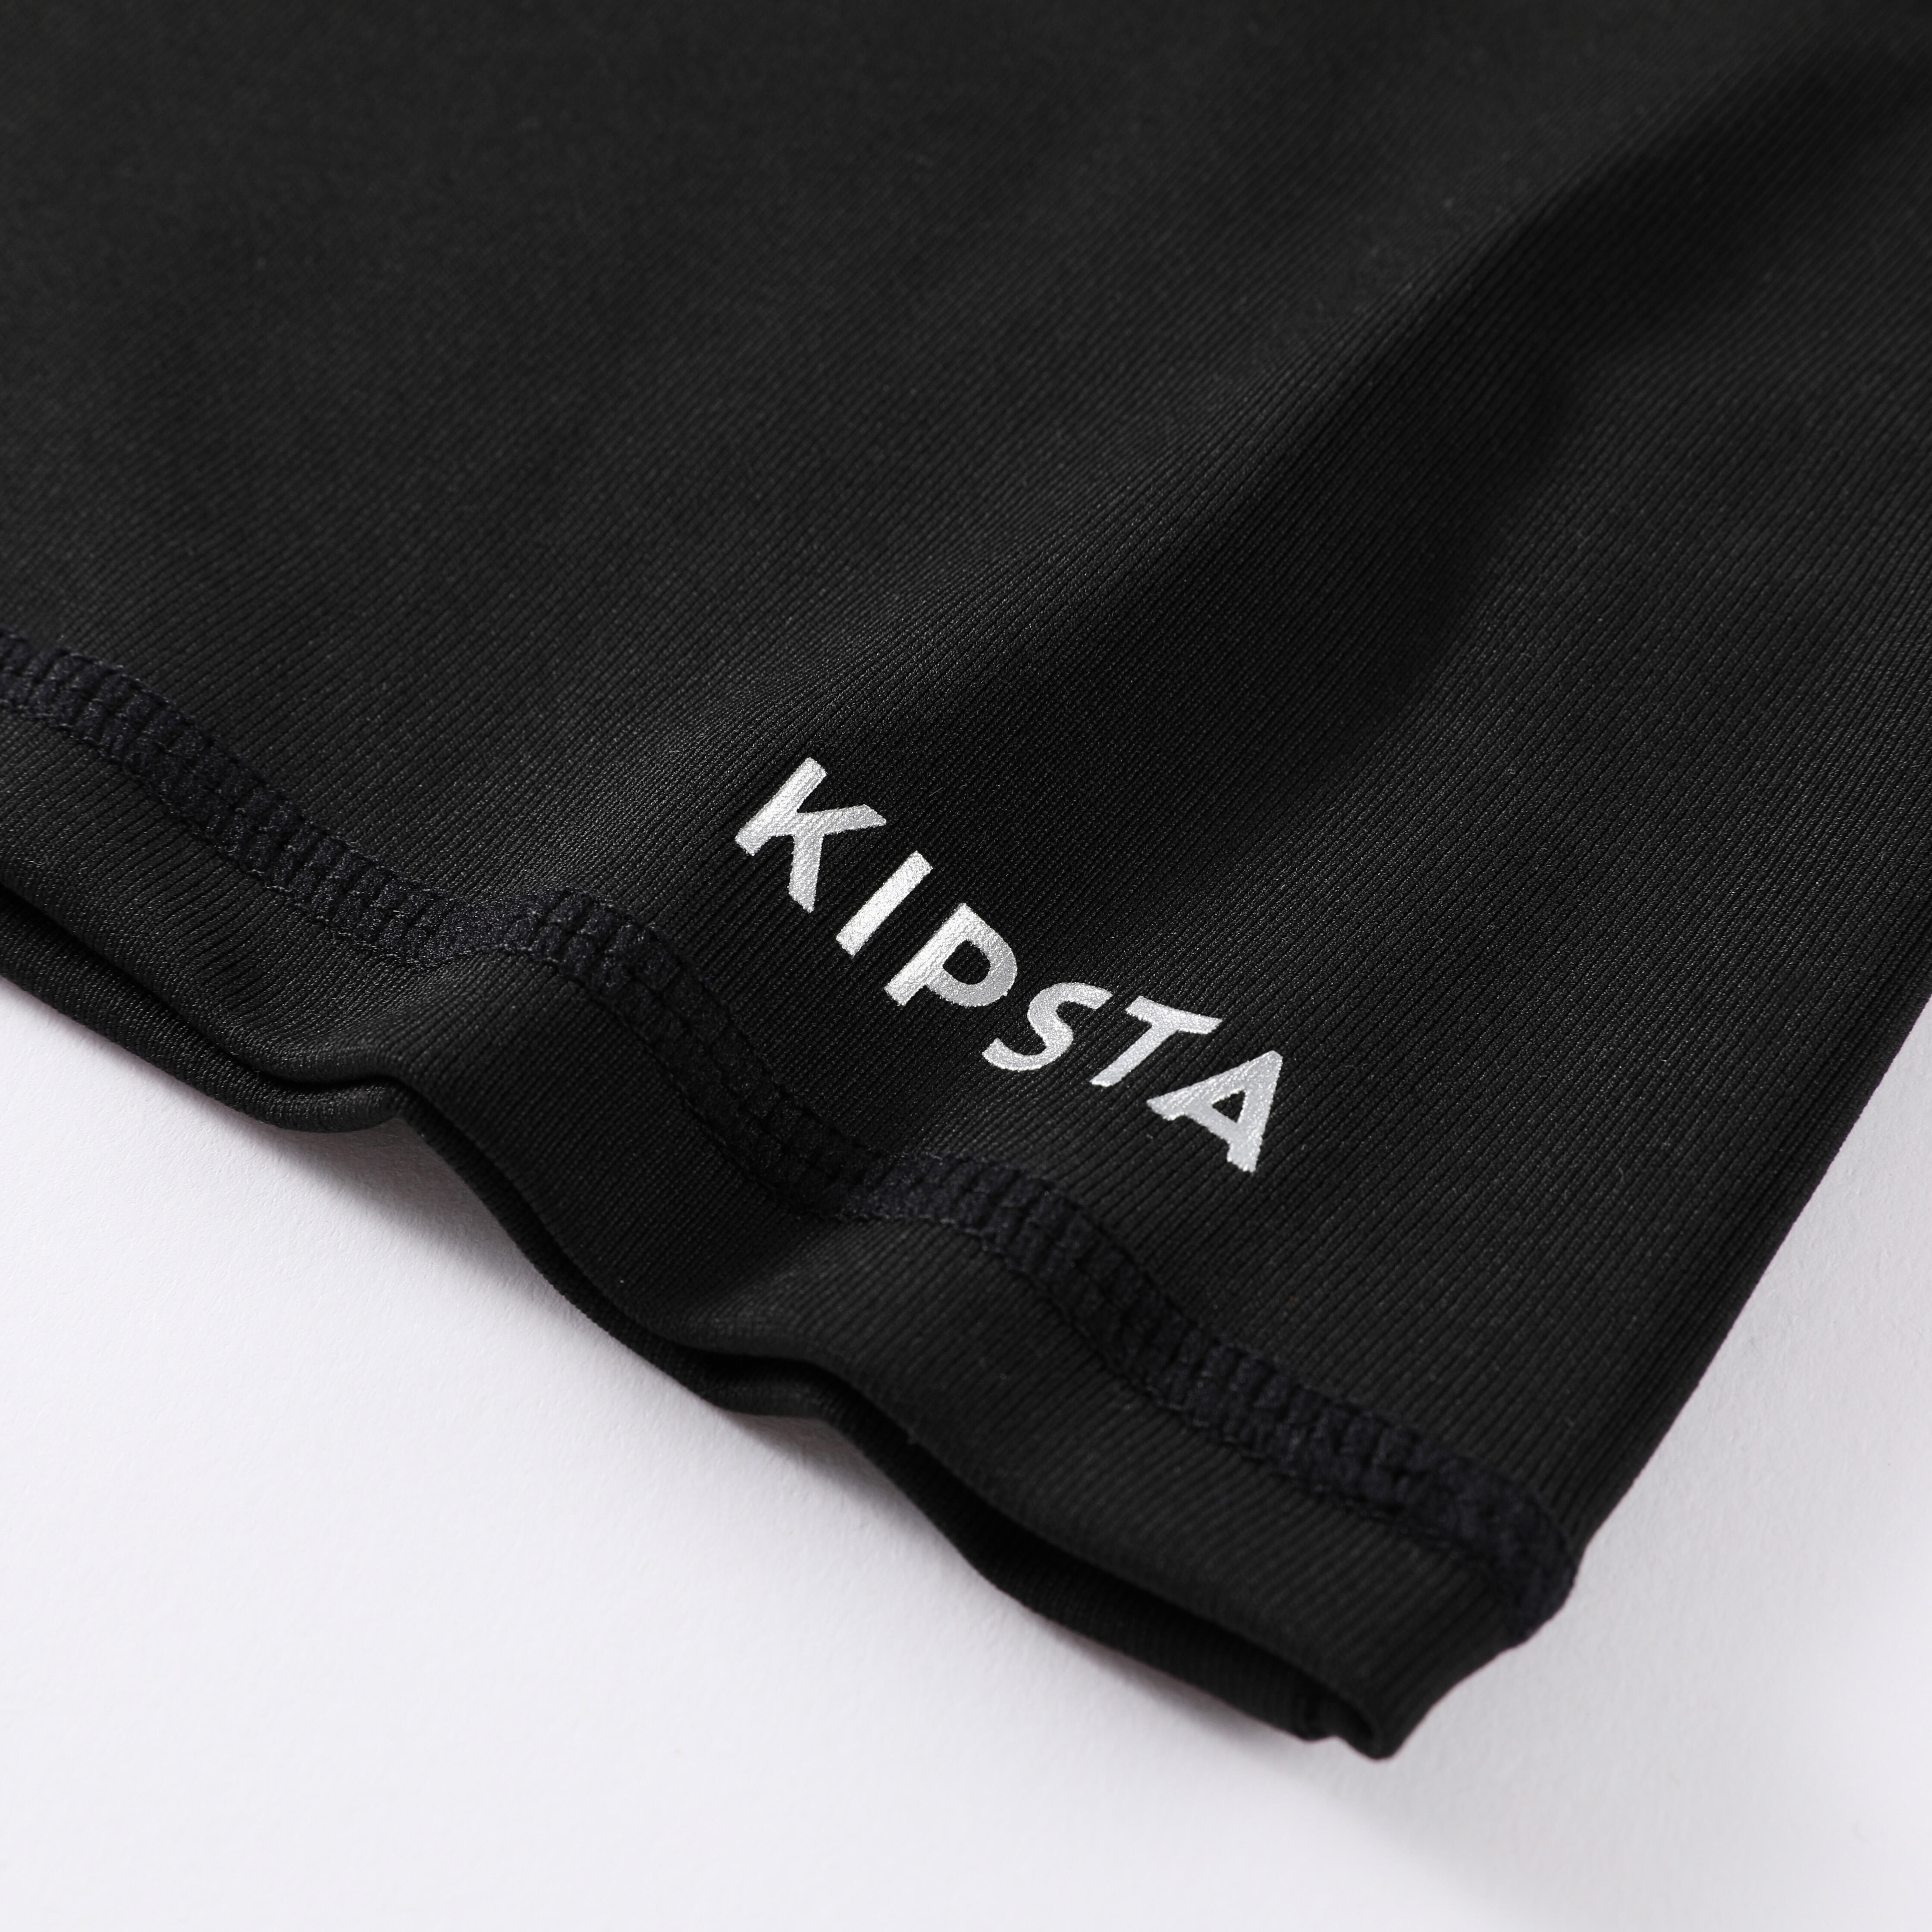 Sous-maillot thermique à manches longues pour enfants - Keepcomfort 100 noir - KIPSTA